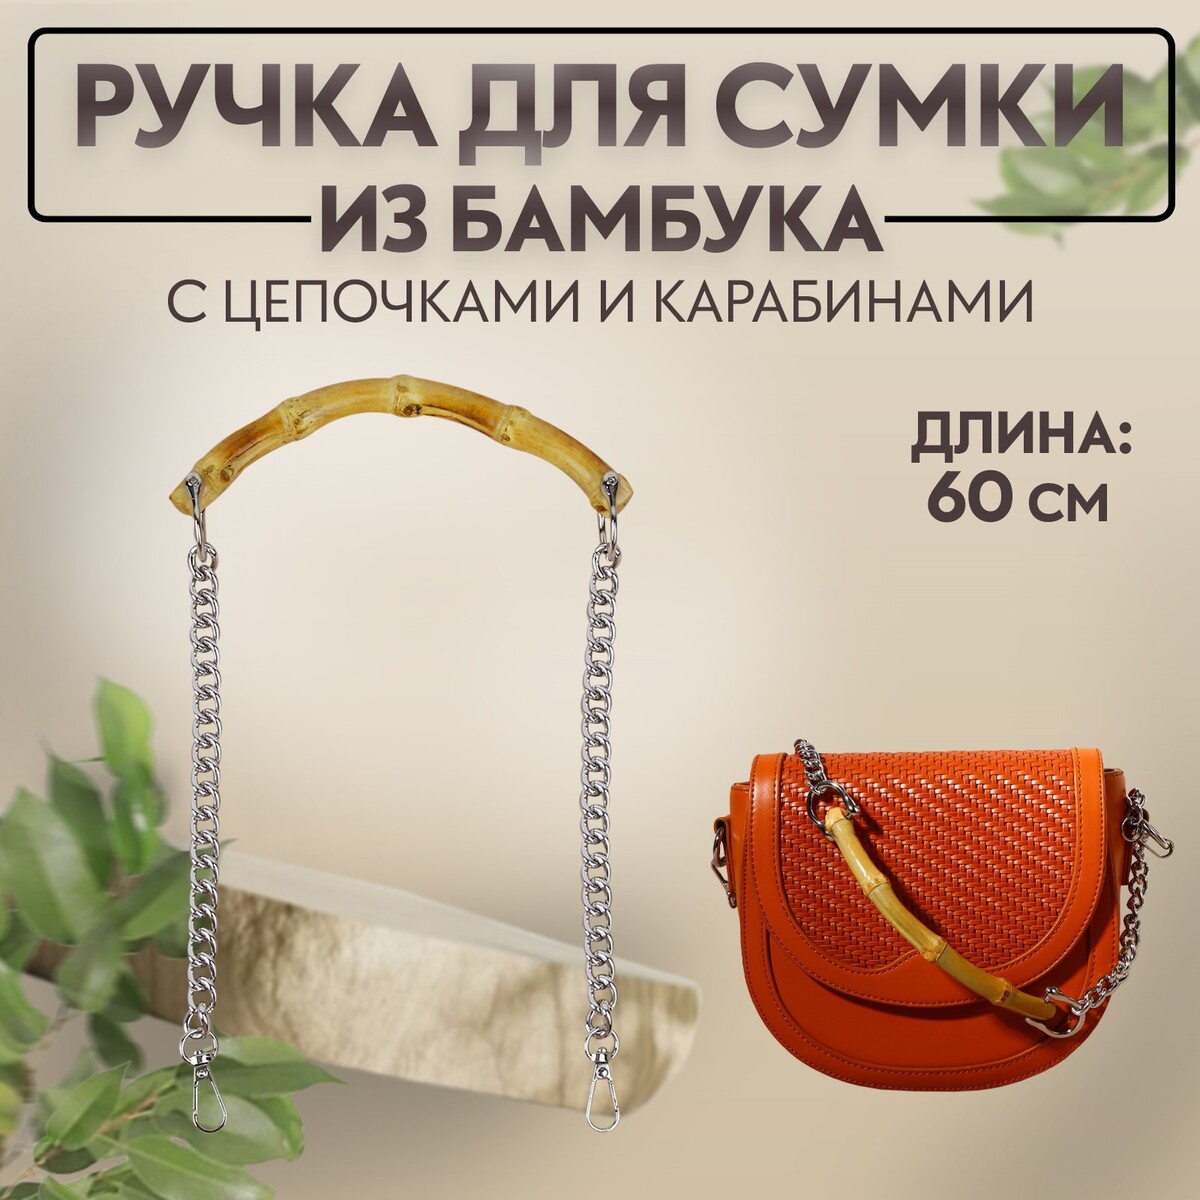 Ручка для сумки, бамбук, с цепочками и карабинами, 60 см, цвет серебряный ручка для сумки бамбук с цепочками и карабинами 60 см золотой